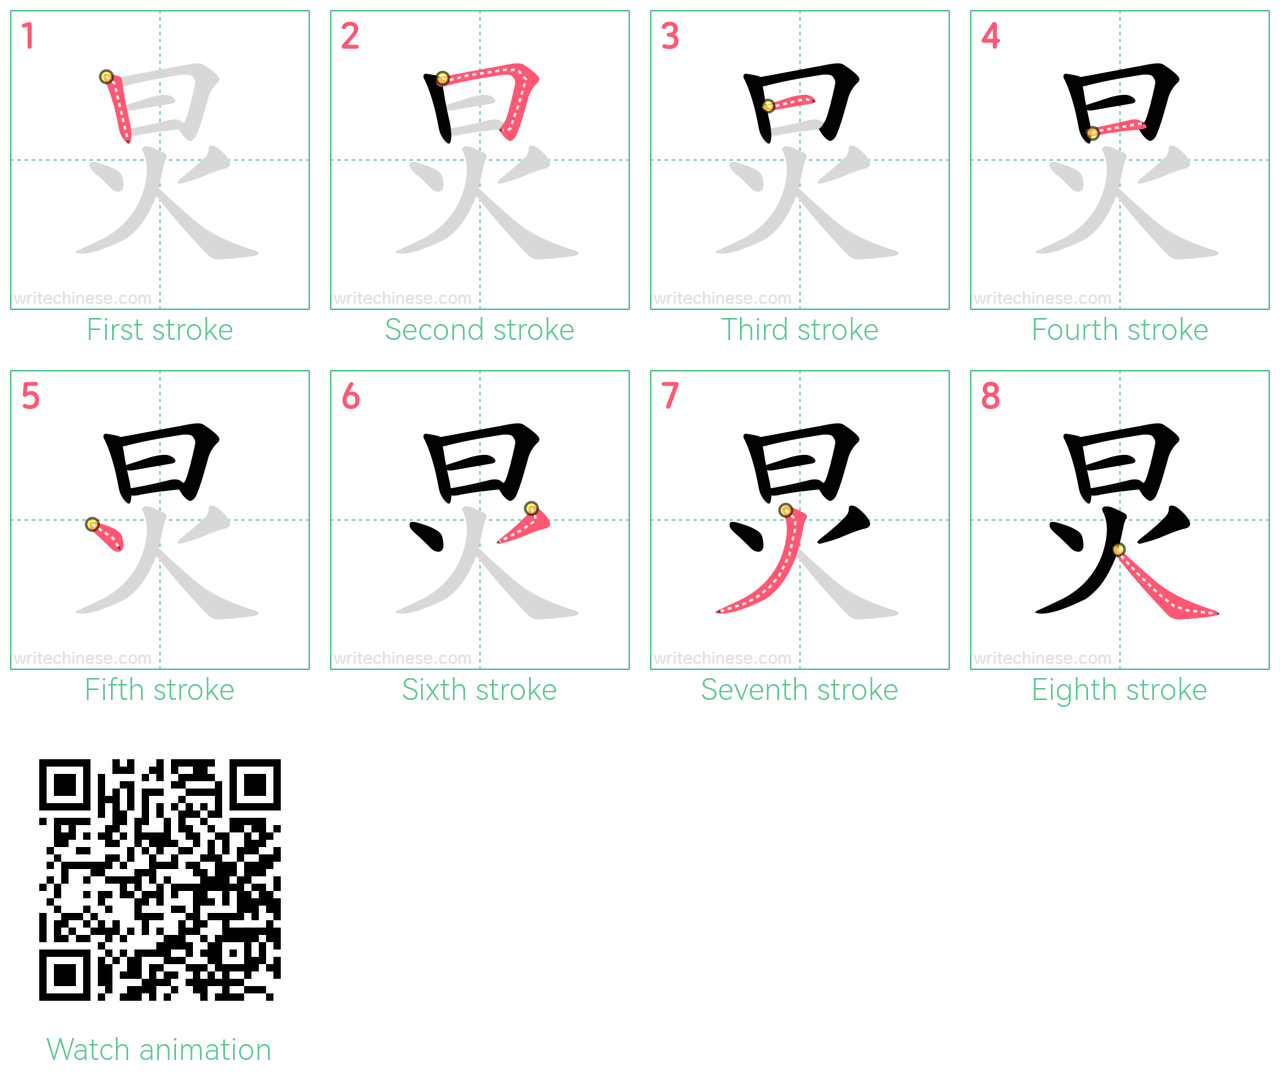 炅 step-by-step stroke order diagrams